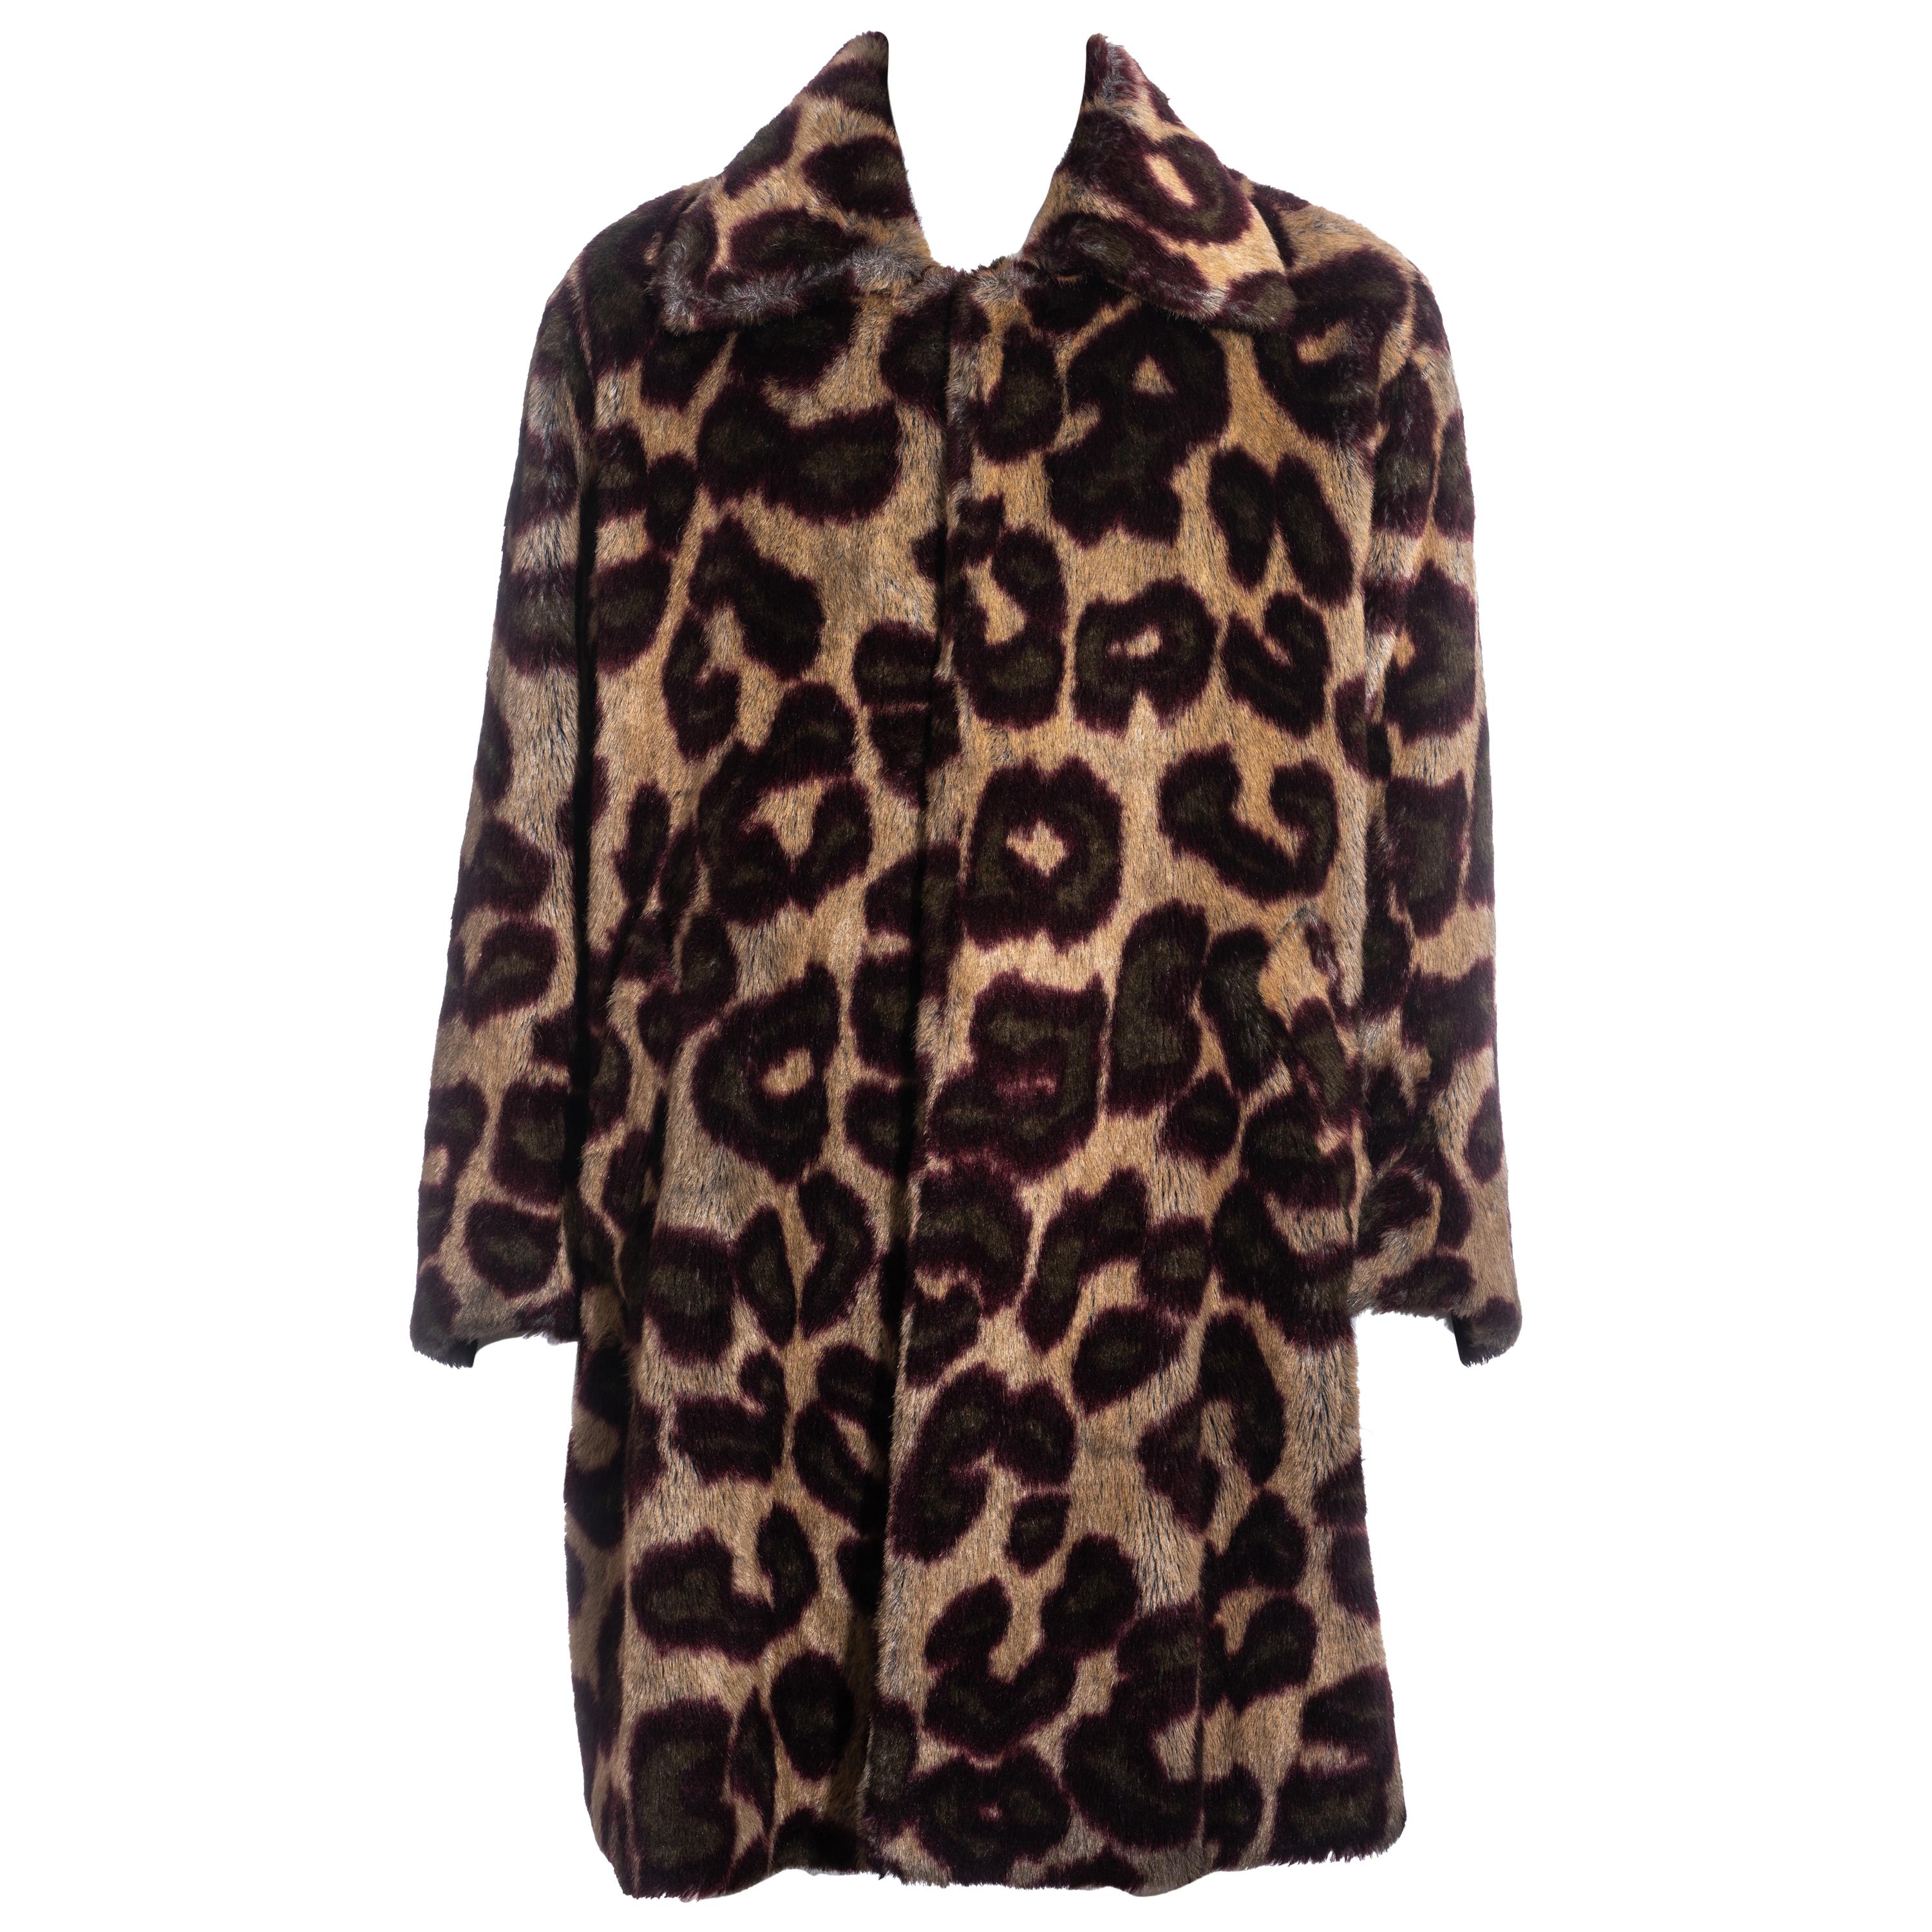 Men's Vivienne Westwood leopard print faux fur coat, fw 1998